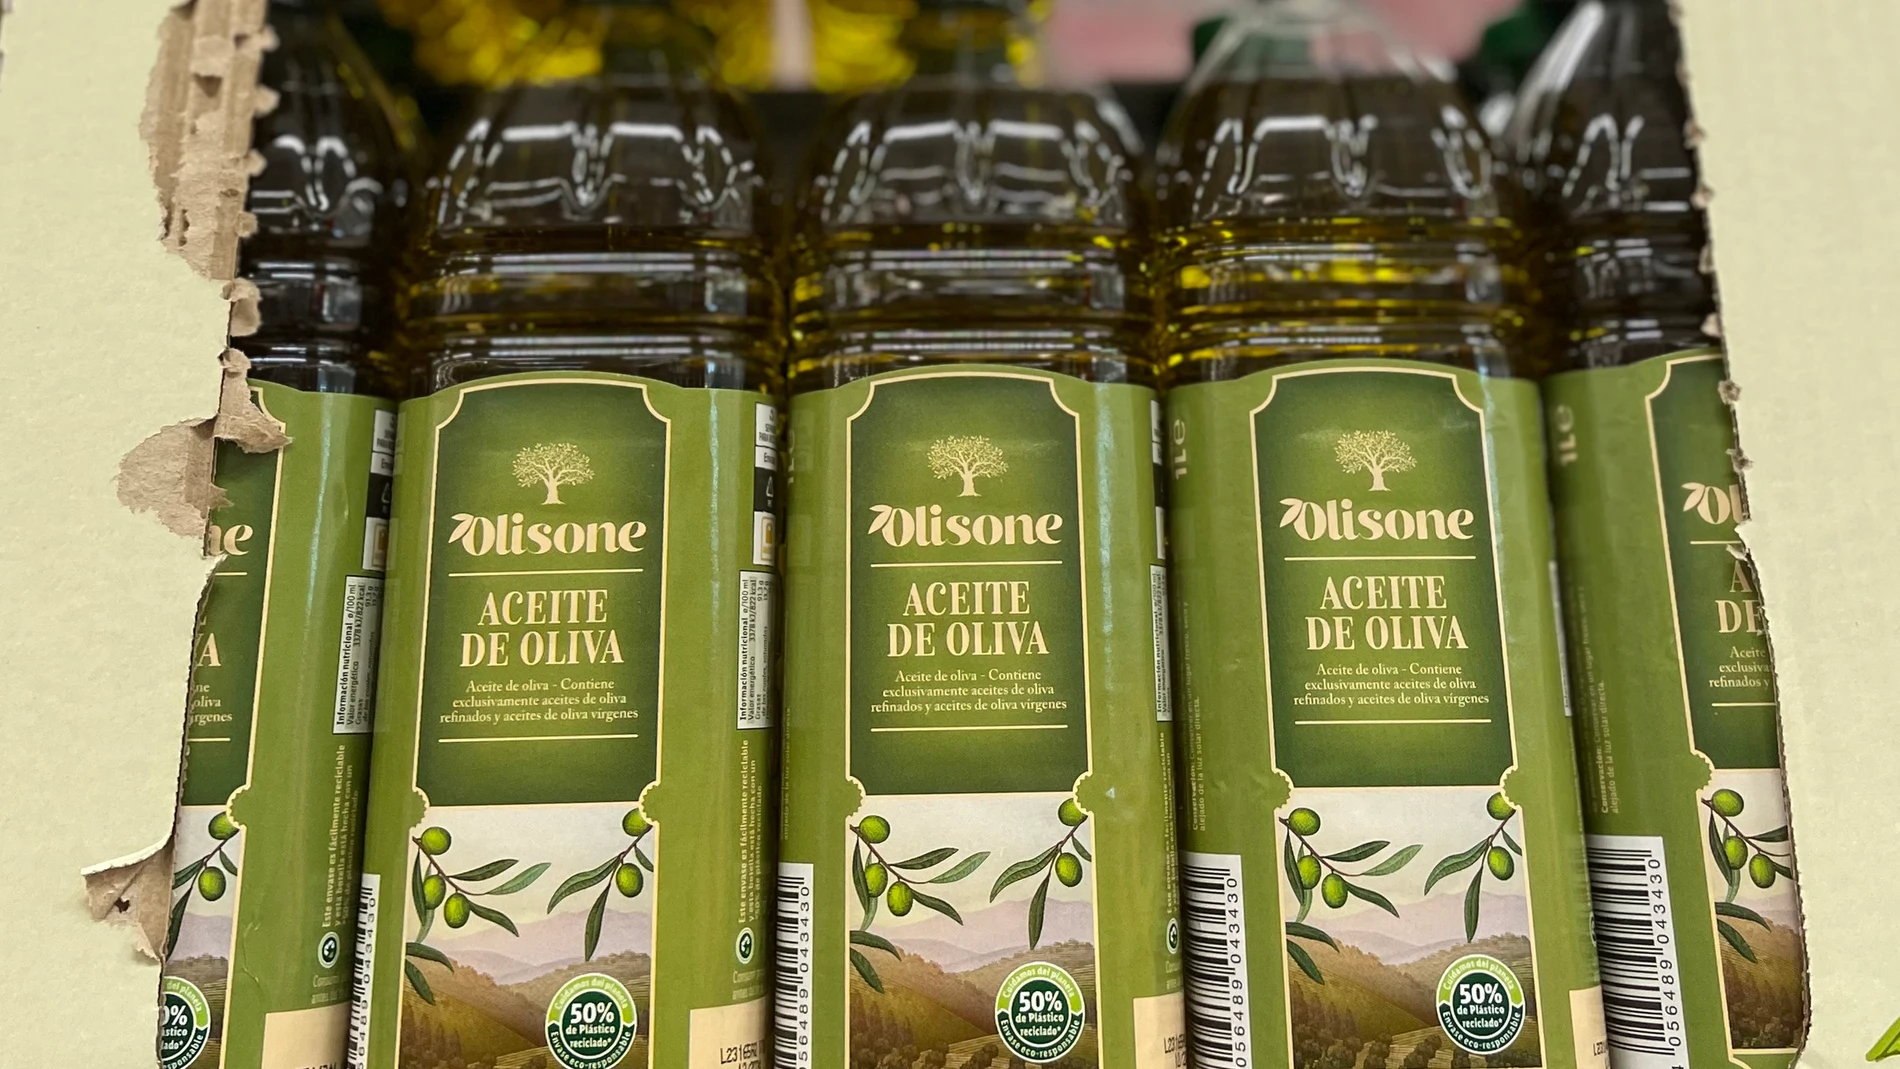 Precios de aceite. Imagen de botellas de aceite oliva y sus precios.© Jess G. Feria.